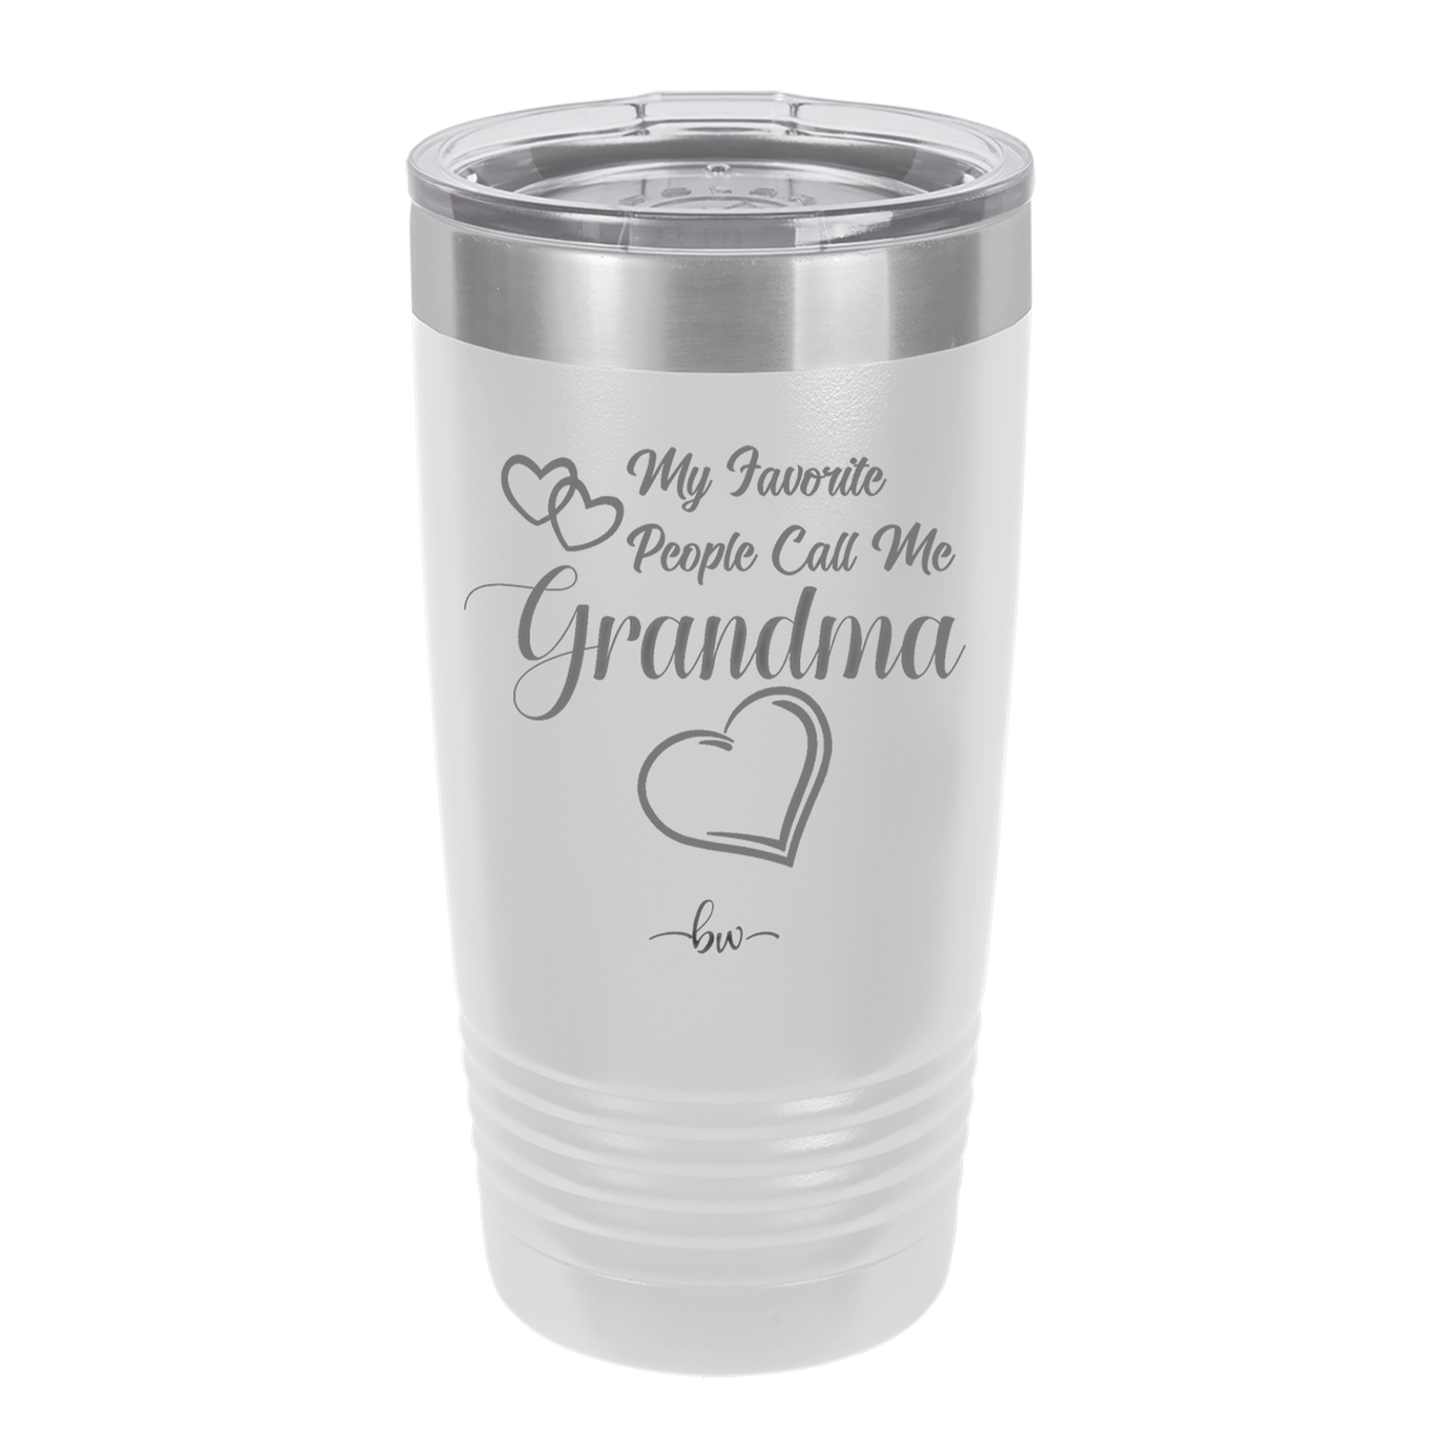 My Favorite People Call Me Grandma - Laser Engraved Stainless Steel Drinkware - 1579 -